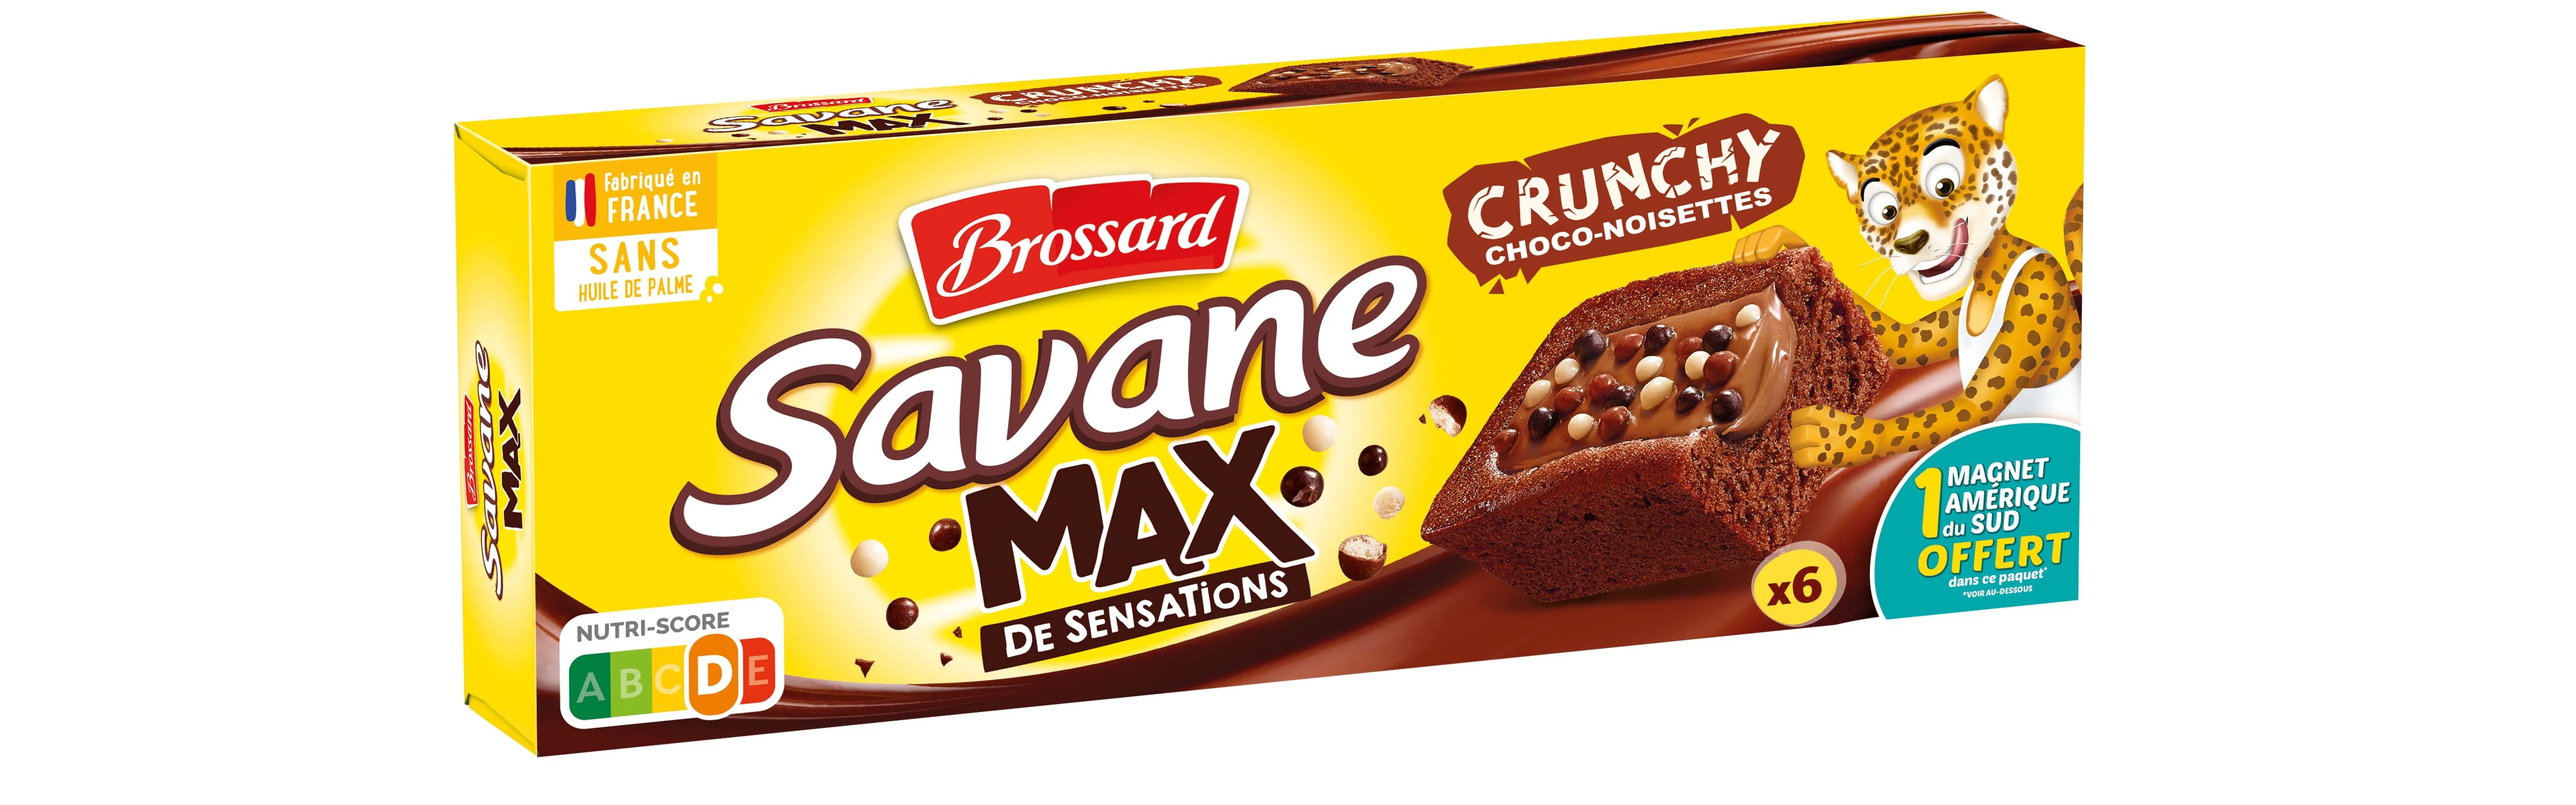 Savane Max Crocante X 6 180g